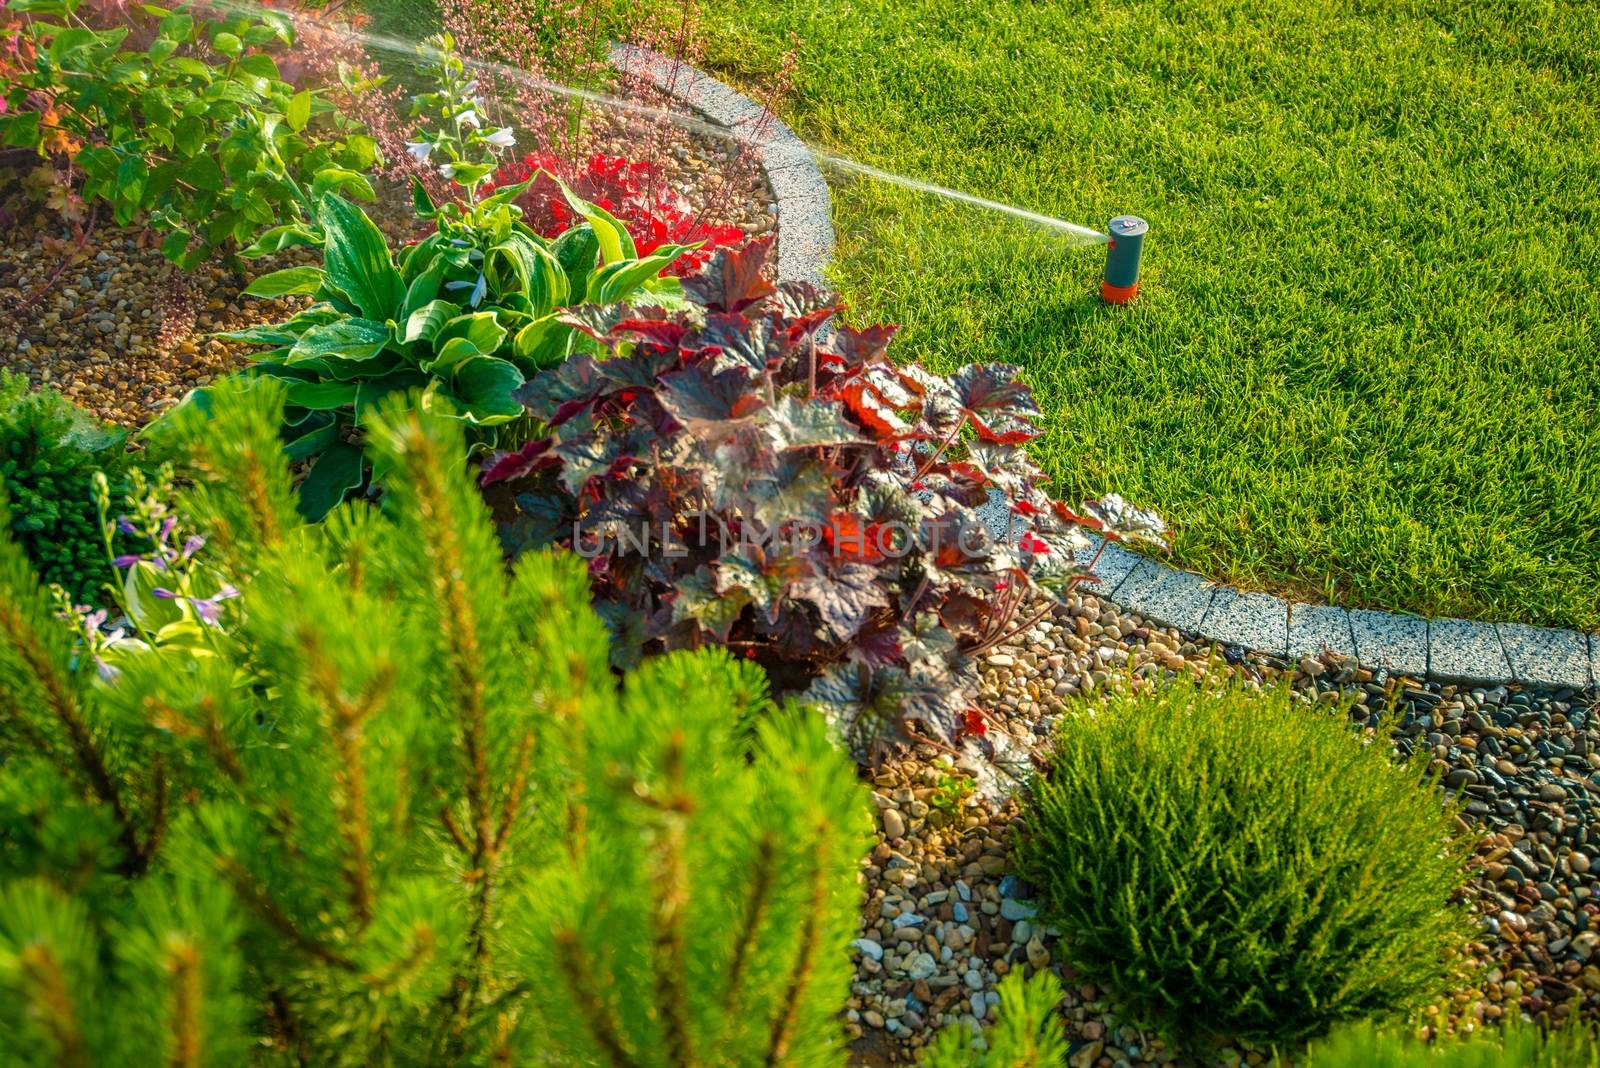 Backyard Lawn Sprinkler by welcomia